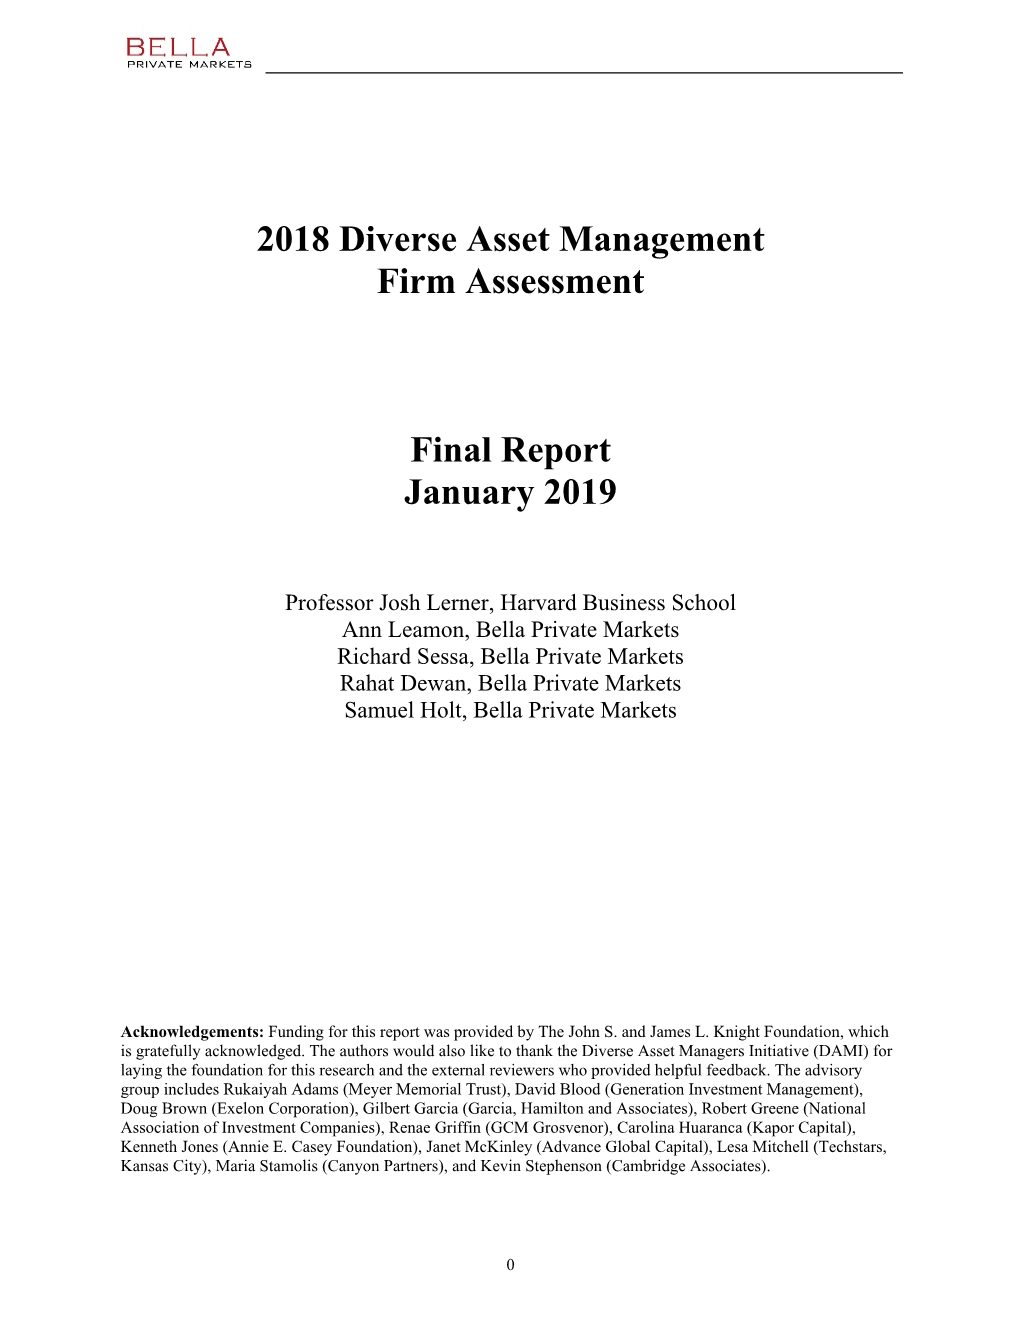 2018 Diverse Asset Management Firm Assessment Final Report January